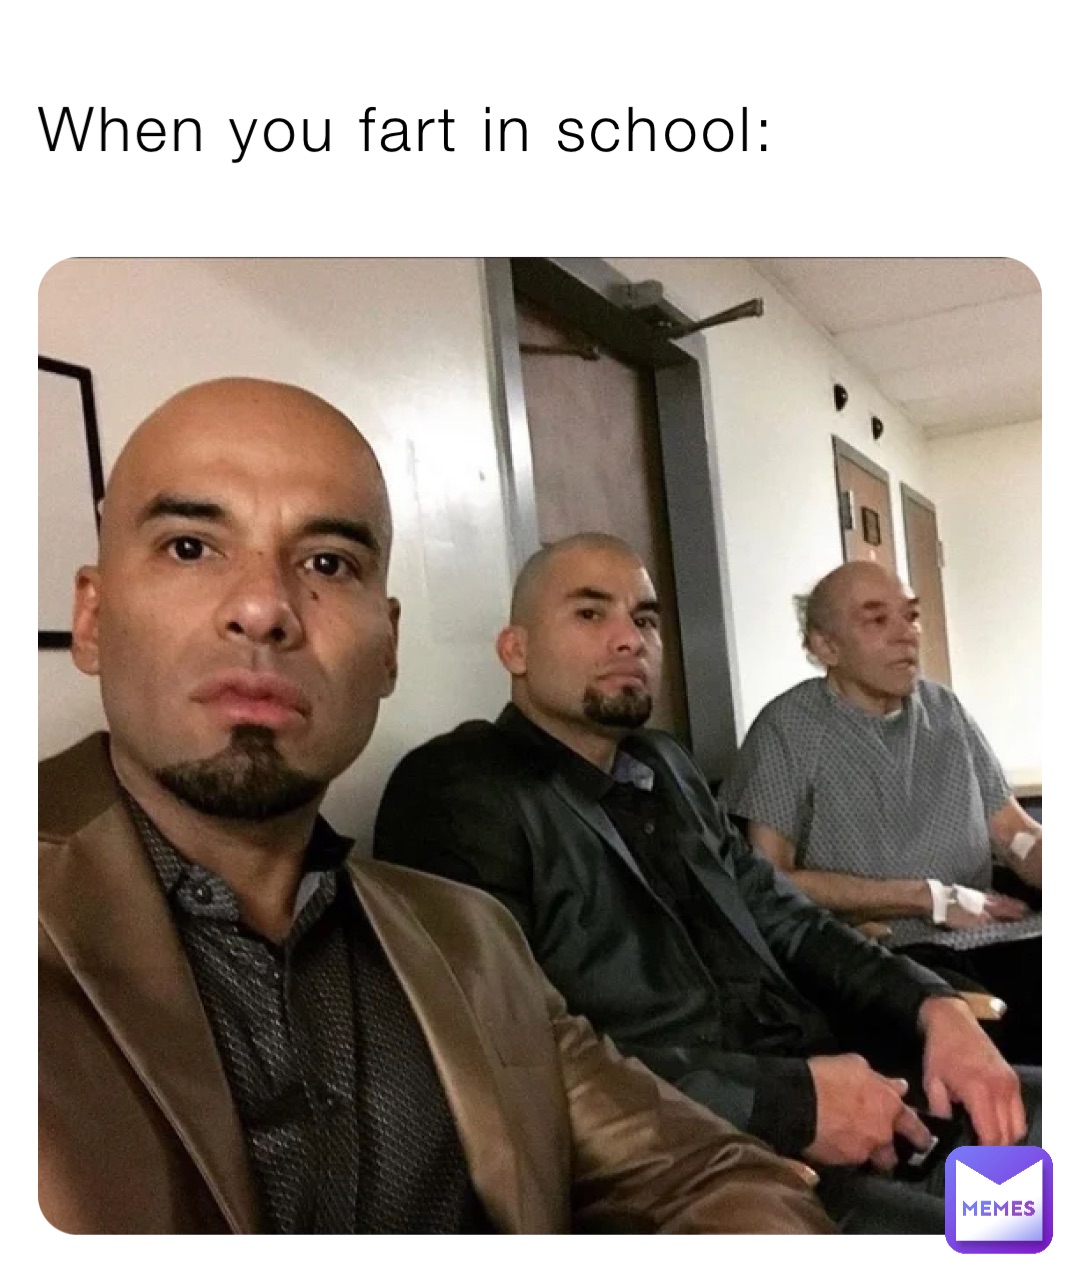 When you fart in school: